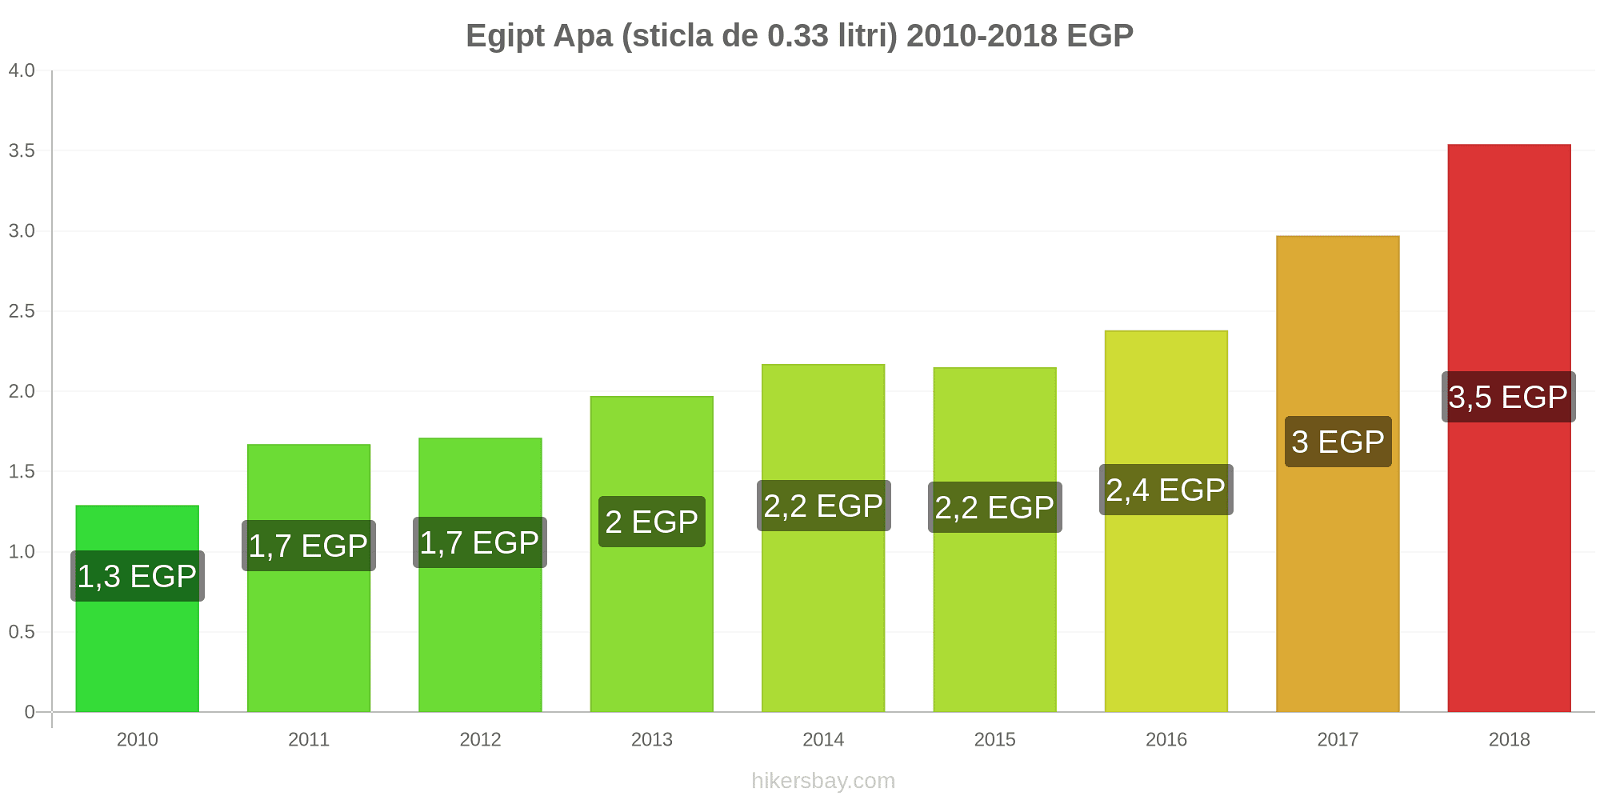 Egipt schimbări de prețuri Apa (sticla de 0.33 litri) hikersbay.com